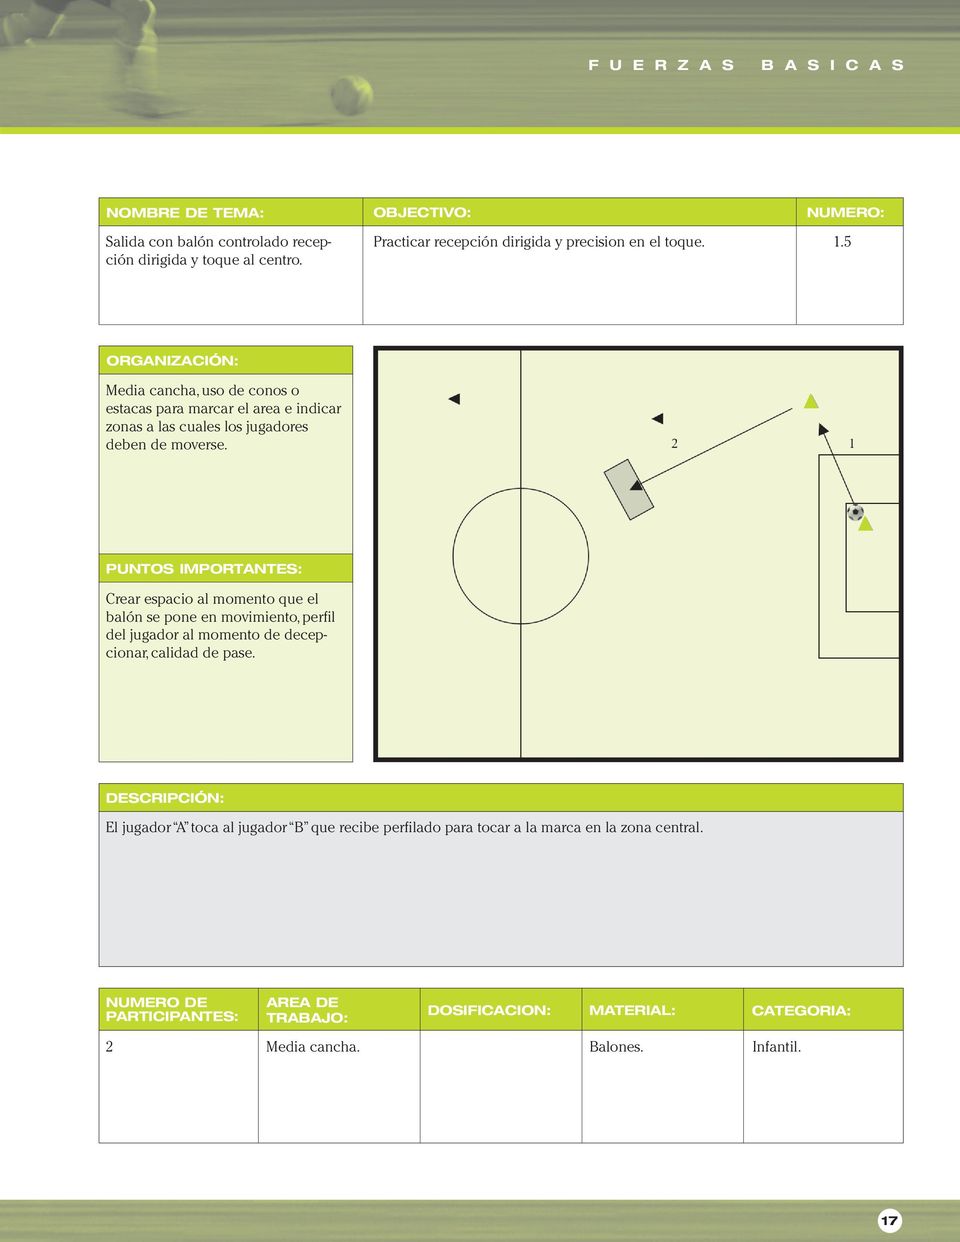 Crear espacio al momento que el balón se pone en movimiento, perfil del jugador al momento de decepcionar, calidad de pase.